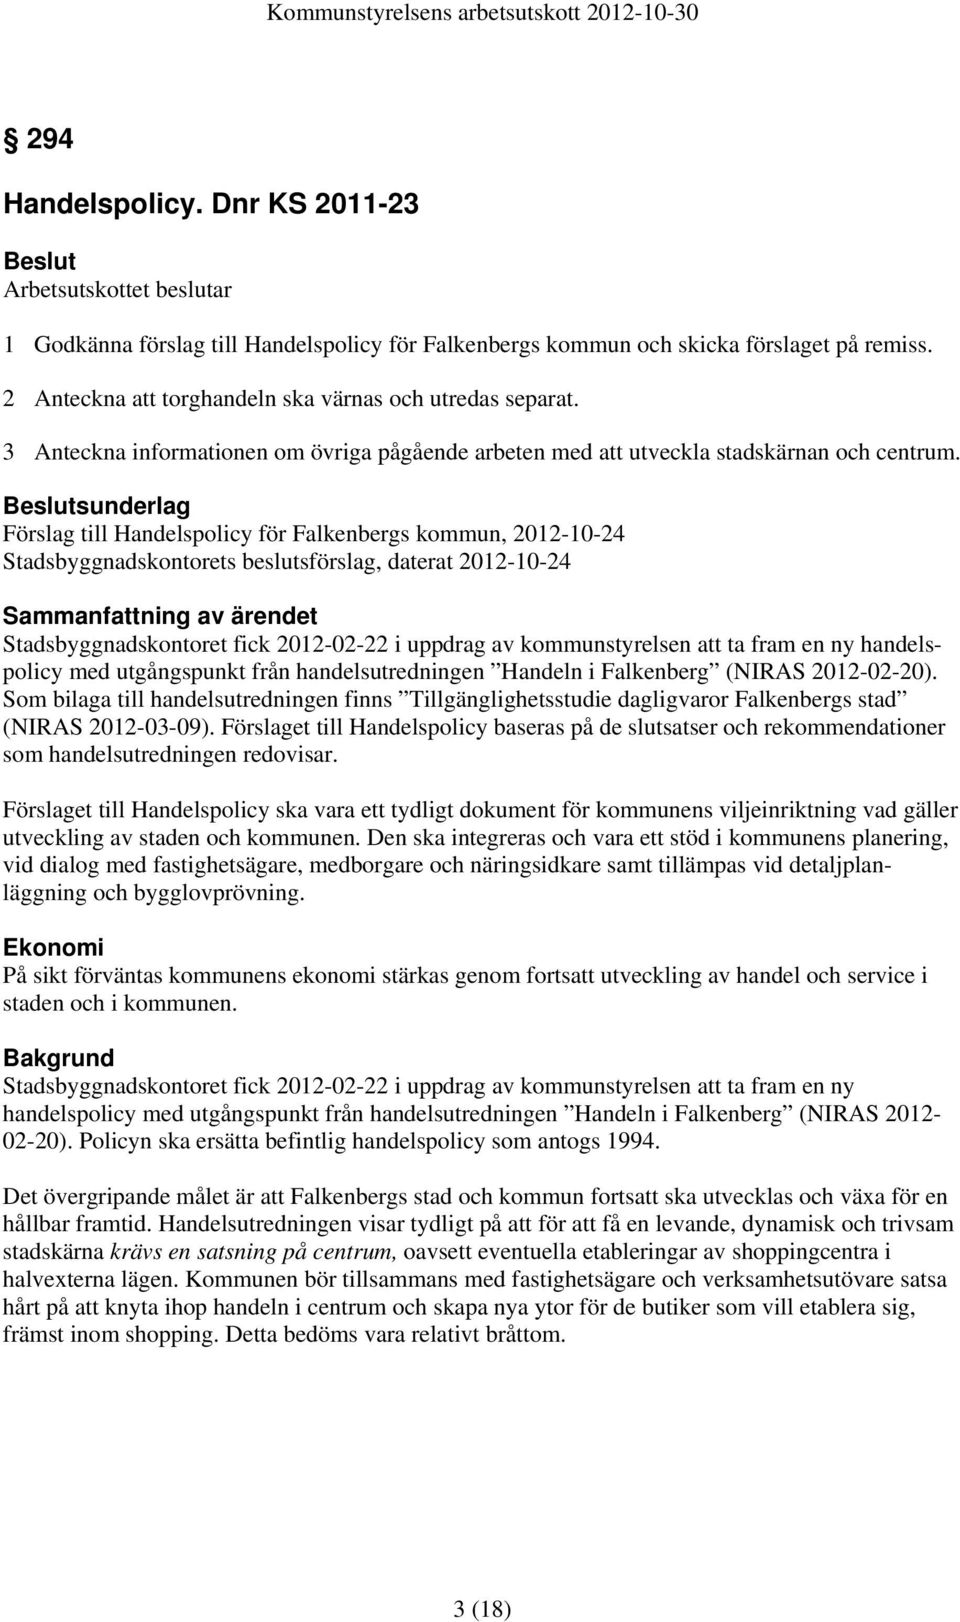 sunderlag Förslag till Handelspolicy för Falkenbergs kommun, 2012-10-24 Stadsbyggnadskontorets beslutsförslag, daterat 2012-10-24 Sammanfattning av ärendet Stadsbyggnadskontoret fick 2012-02-22 i